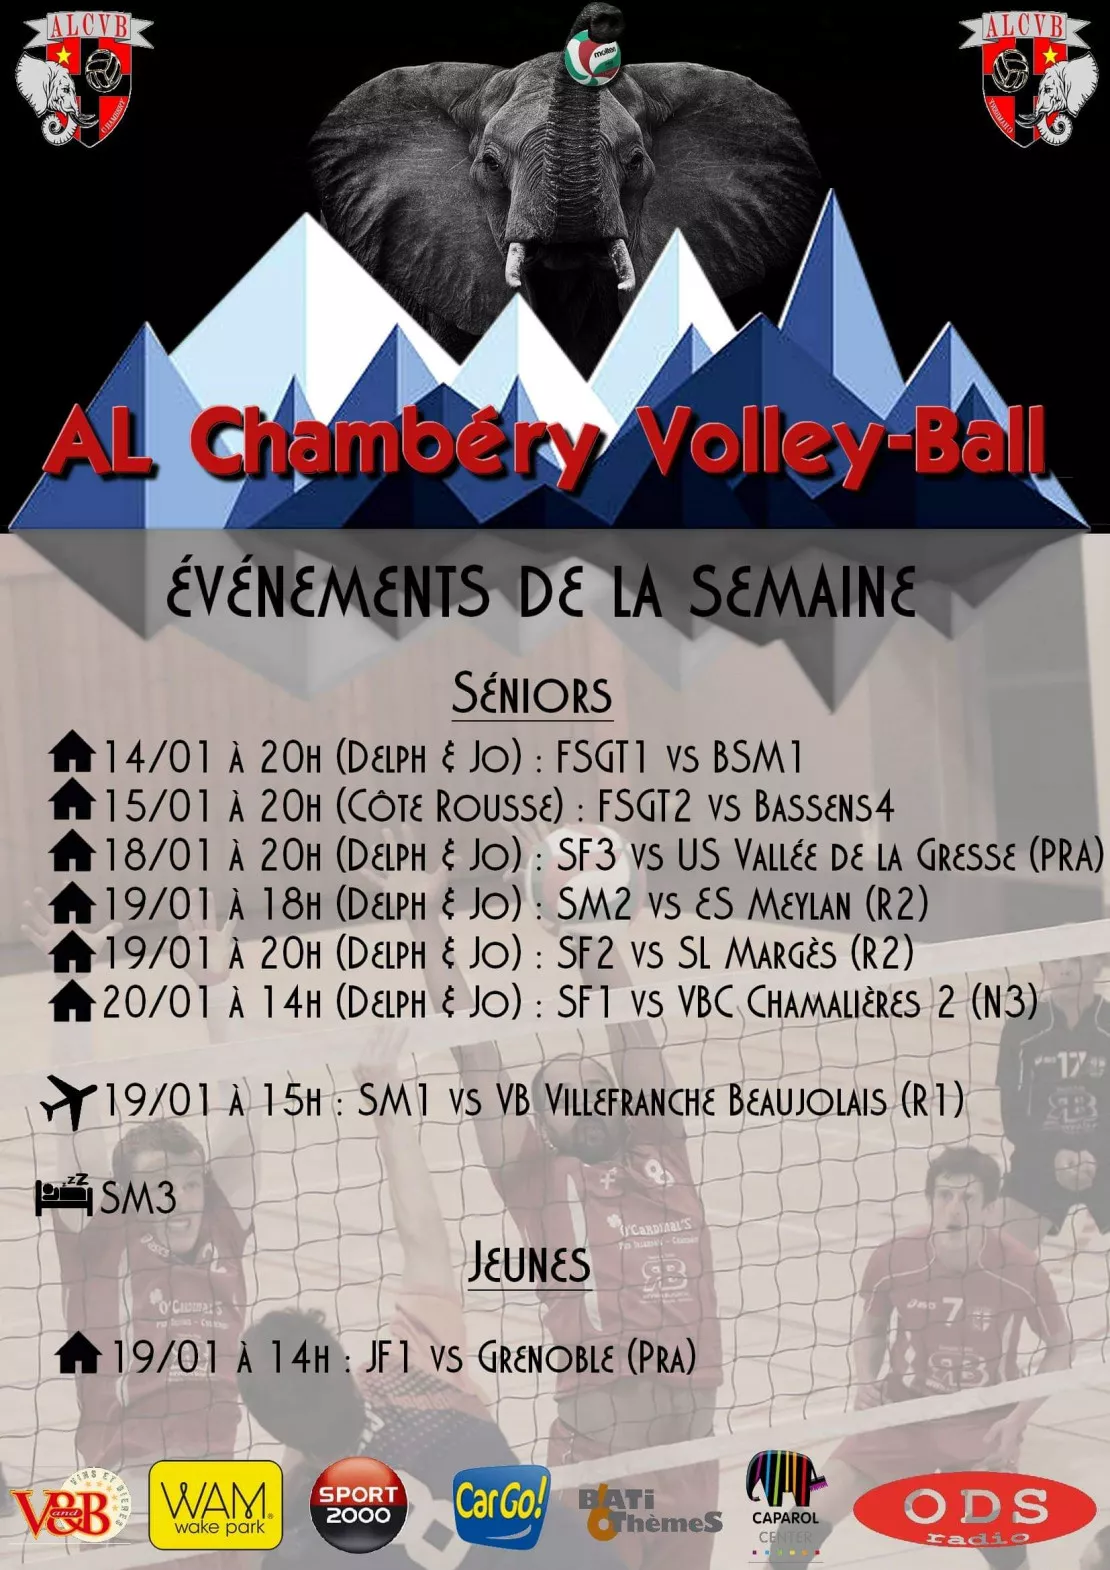 PARTENAIRE- Match de l'Amicale Laique de Chambéry Volleyball au stade Delphine et Jonathan